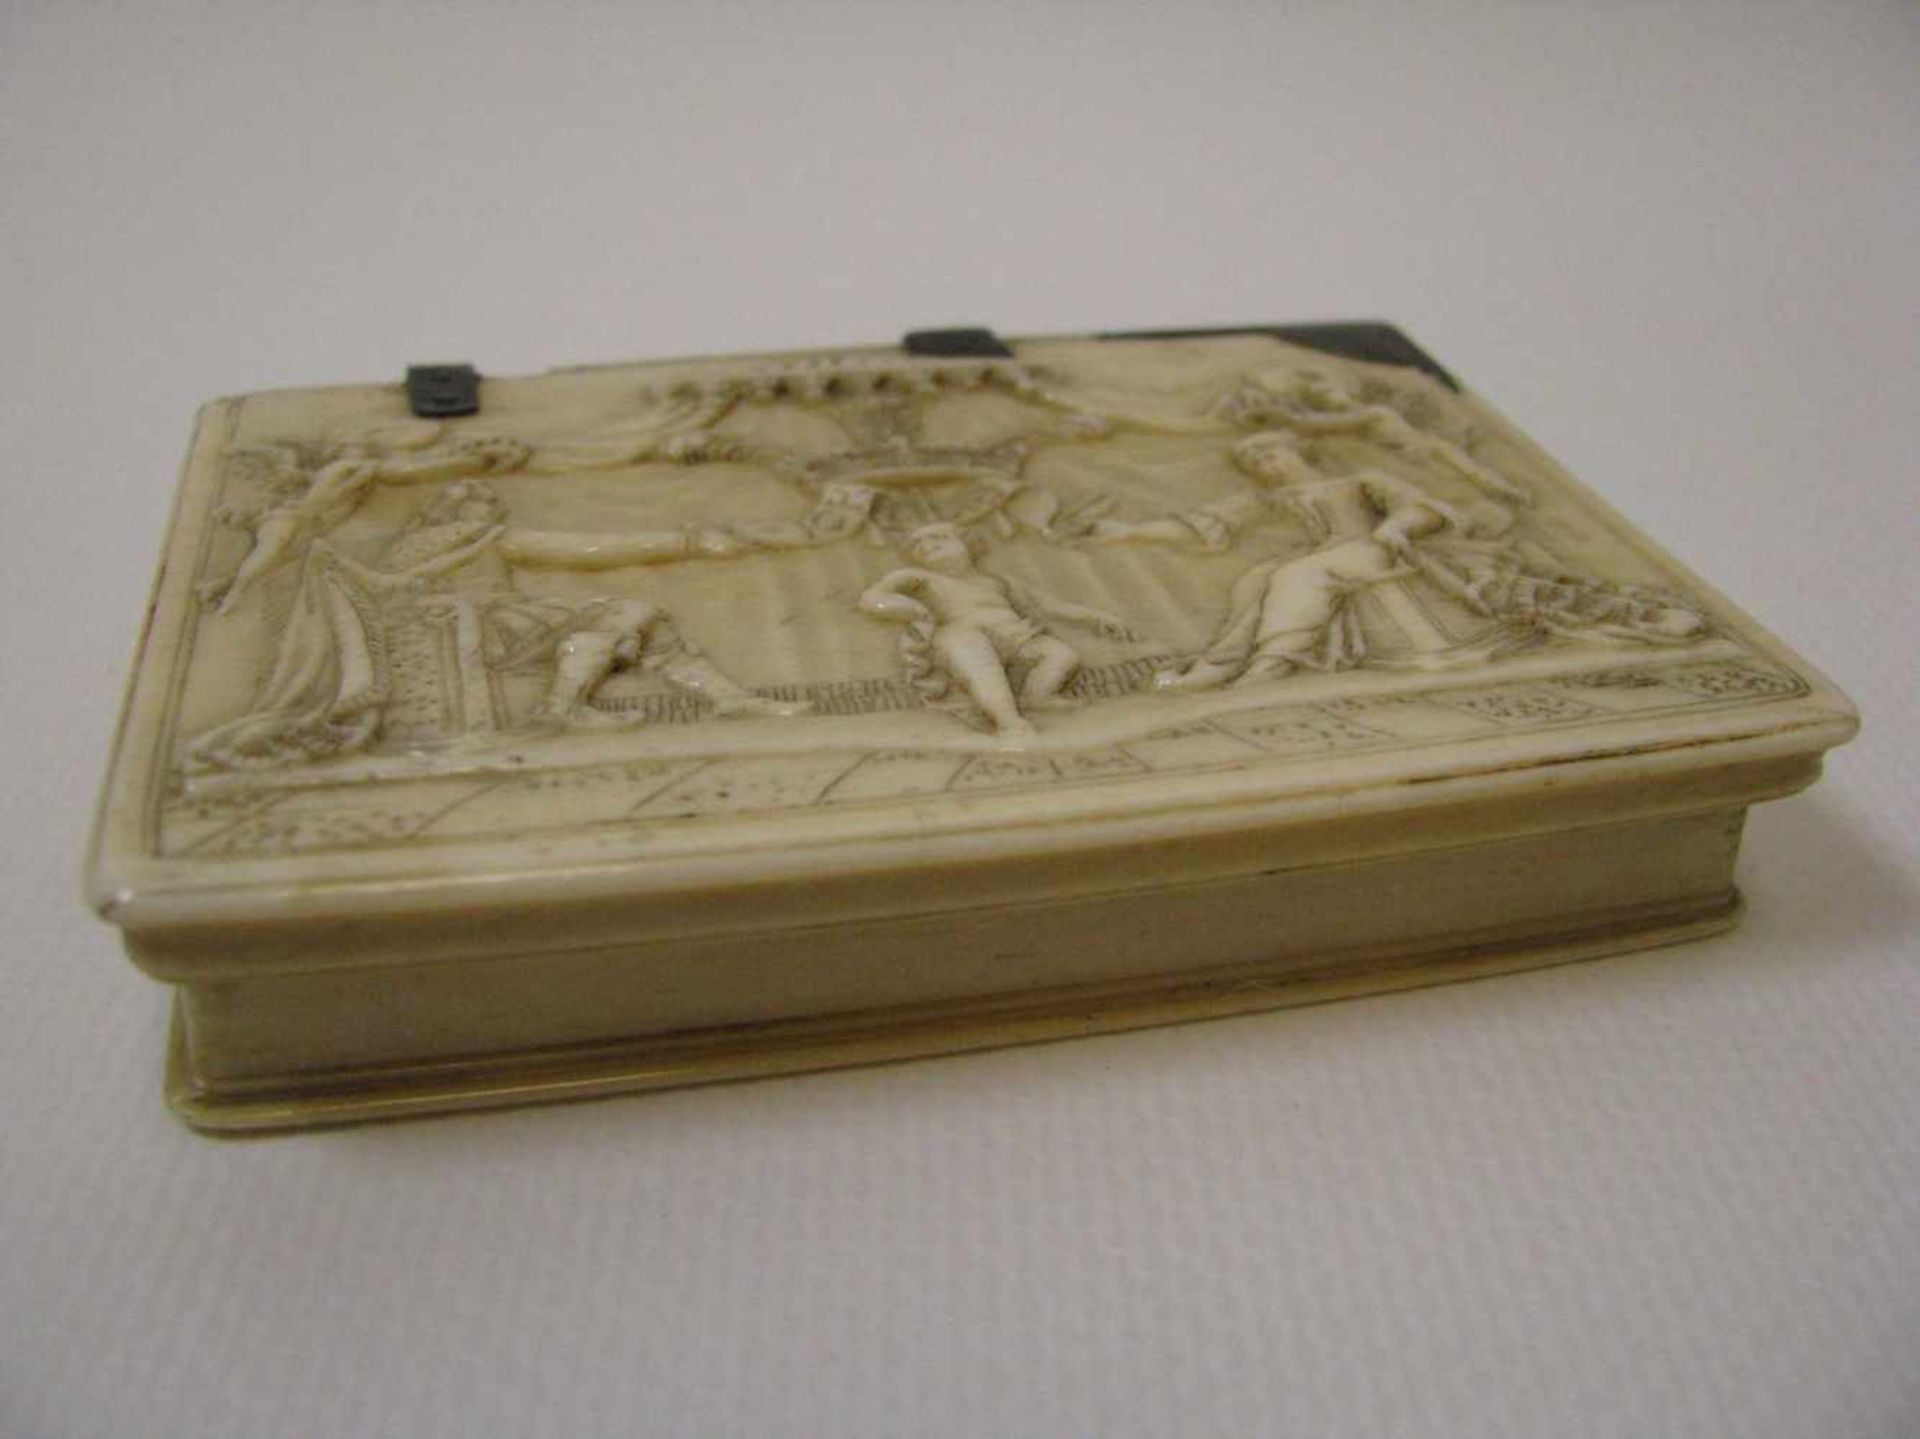 Seltene Schnupftabakdose, England, Wales, um 1700, Elfenbein fein beschnitzt mit Darstellung einer - Image 2 of 7